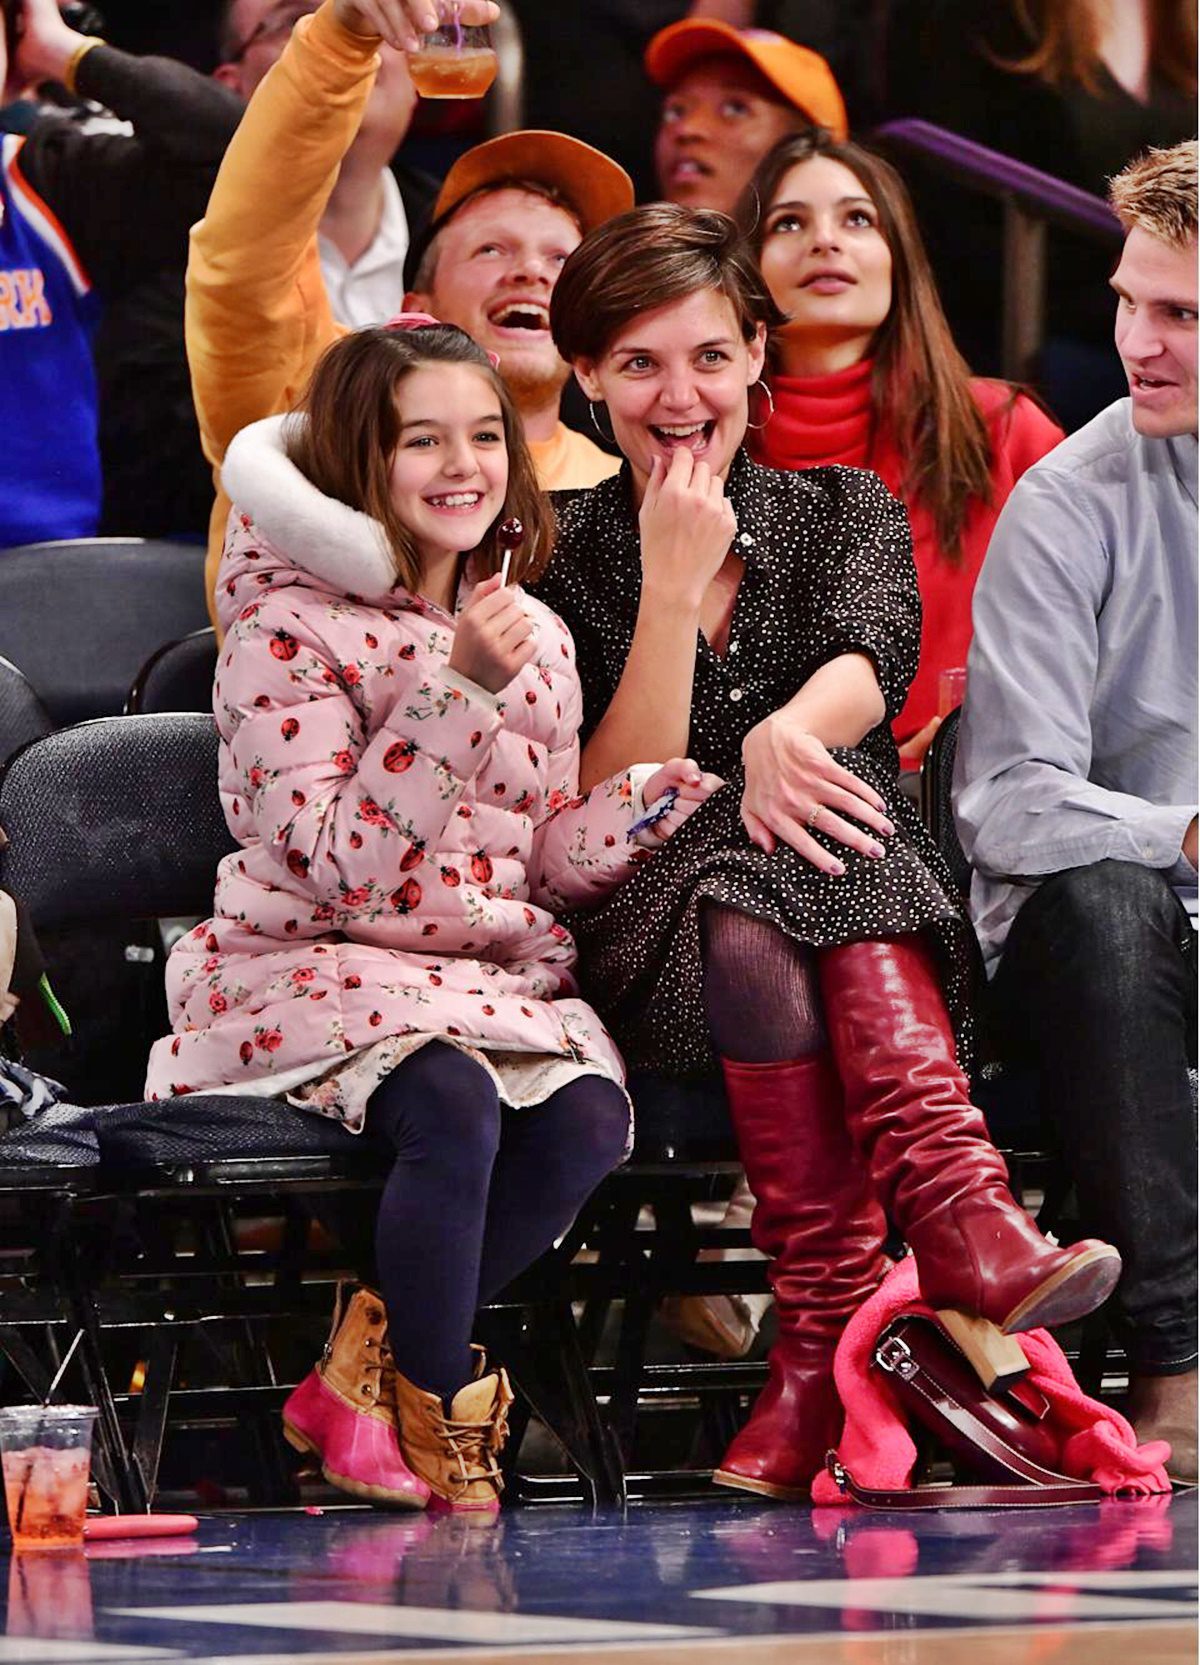 Tom Cruise 10 éve nem látta a lányát: ezért hagyta el a családját a híres színész